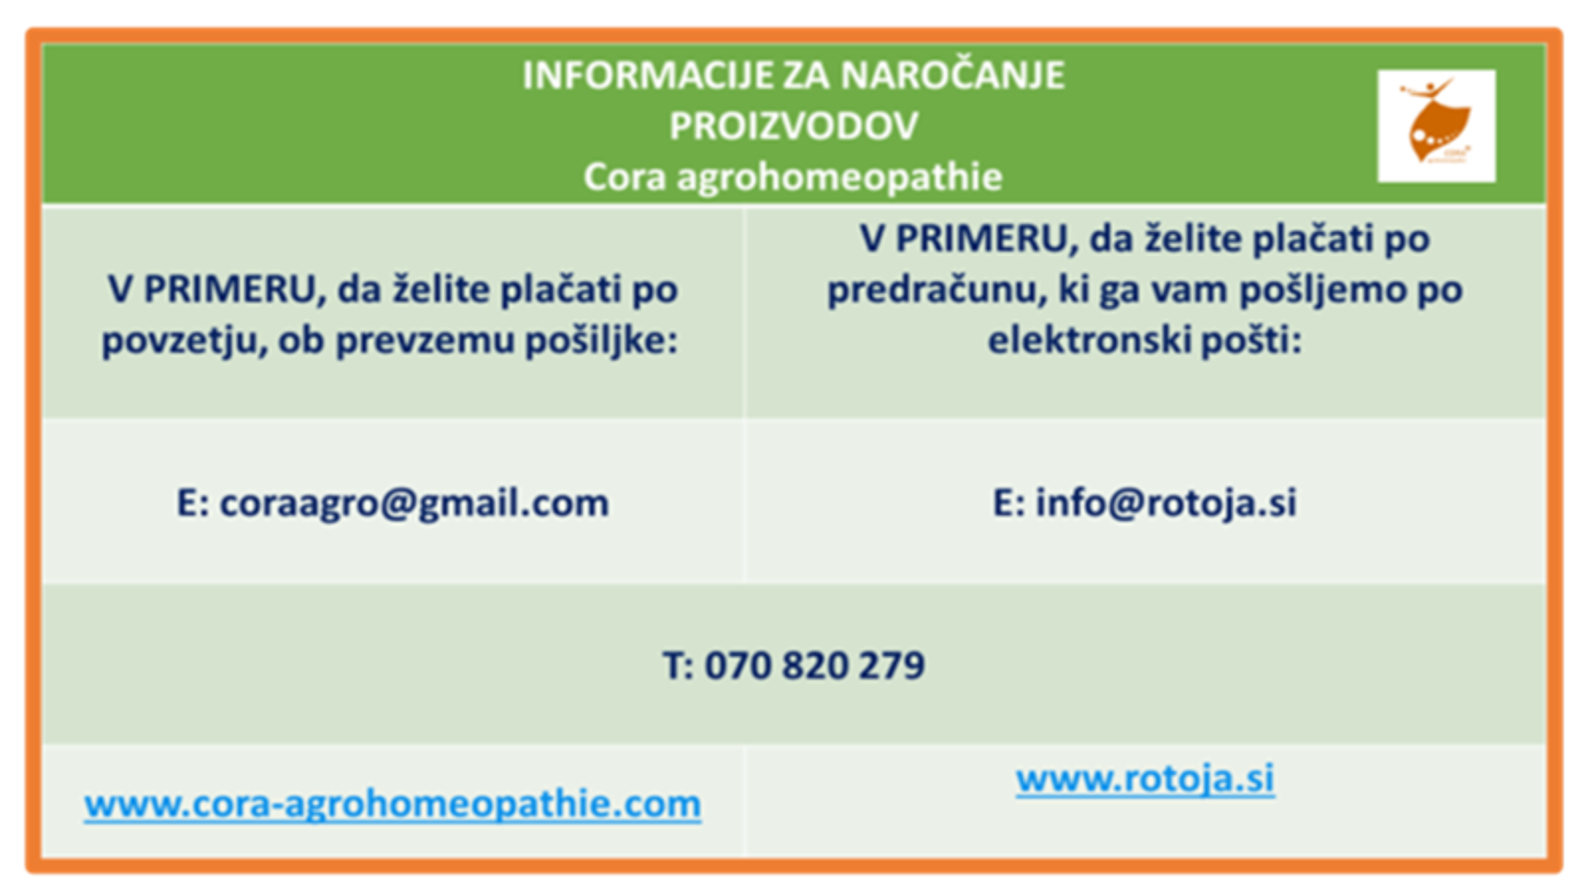 INFORMACIJE ZA NAROCANJE PROIZVODOV Cora agrohomeopathie www.cora agrohomeopathie.com www.rotoja.si  -